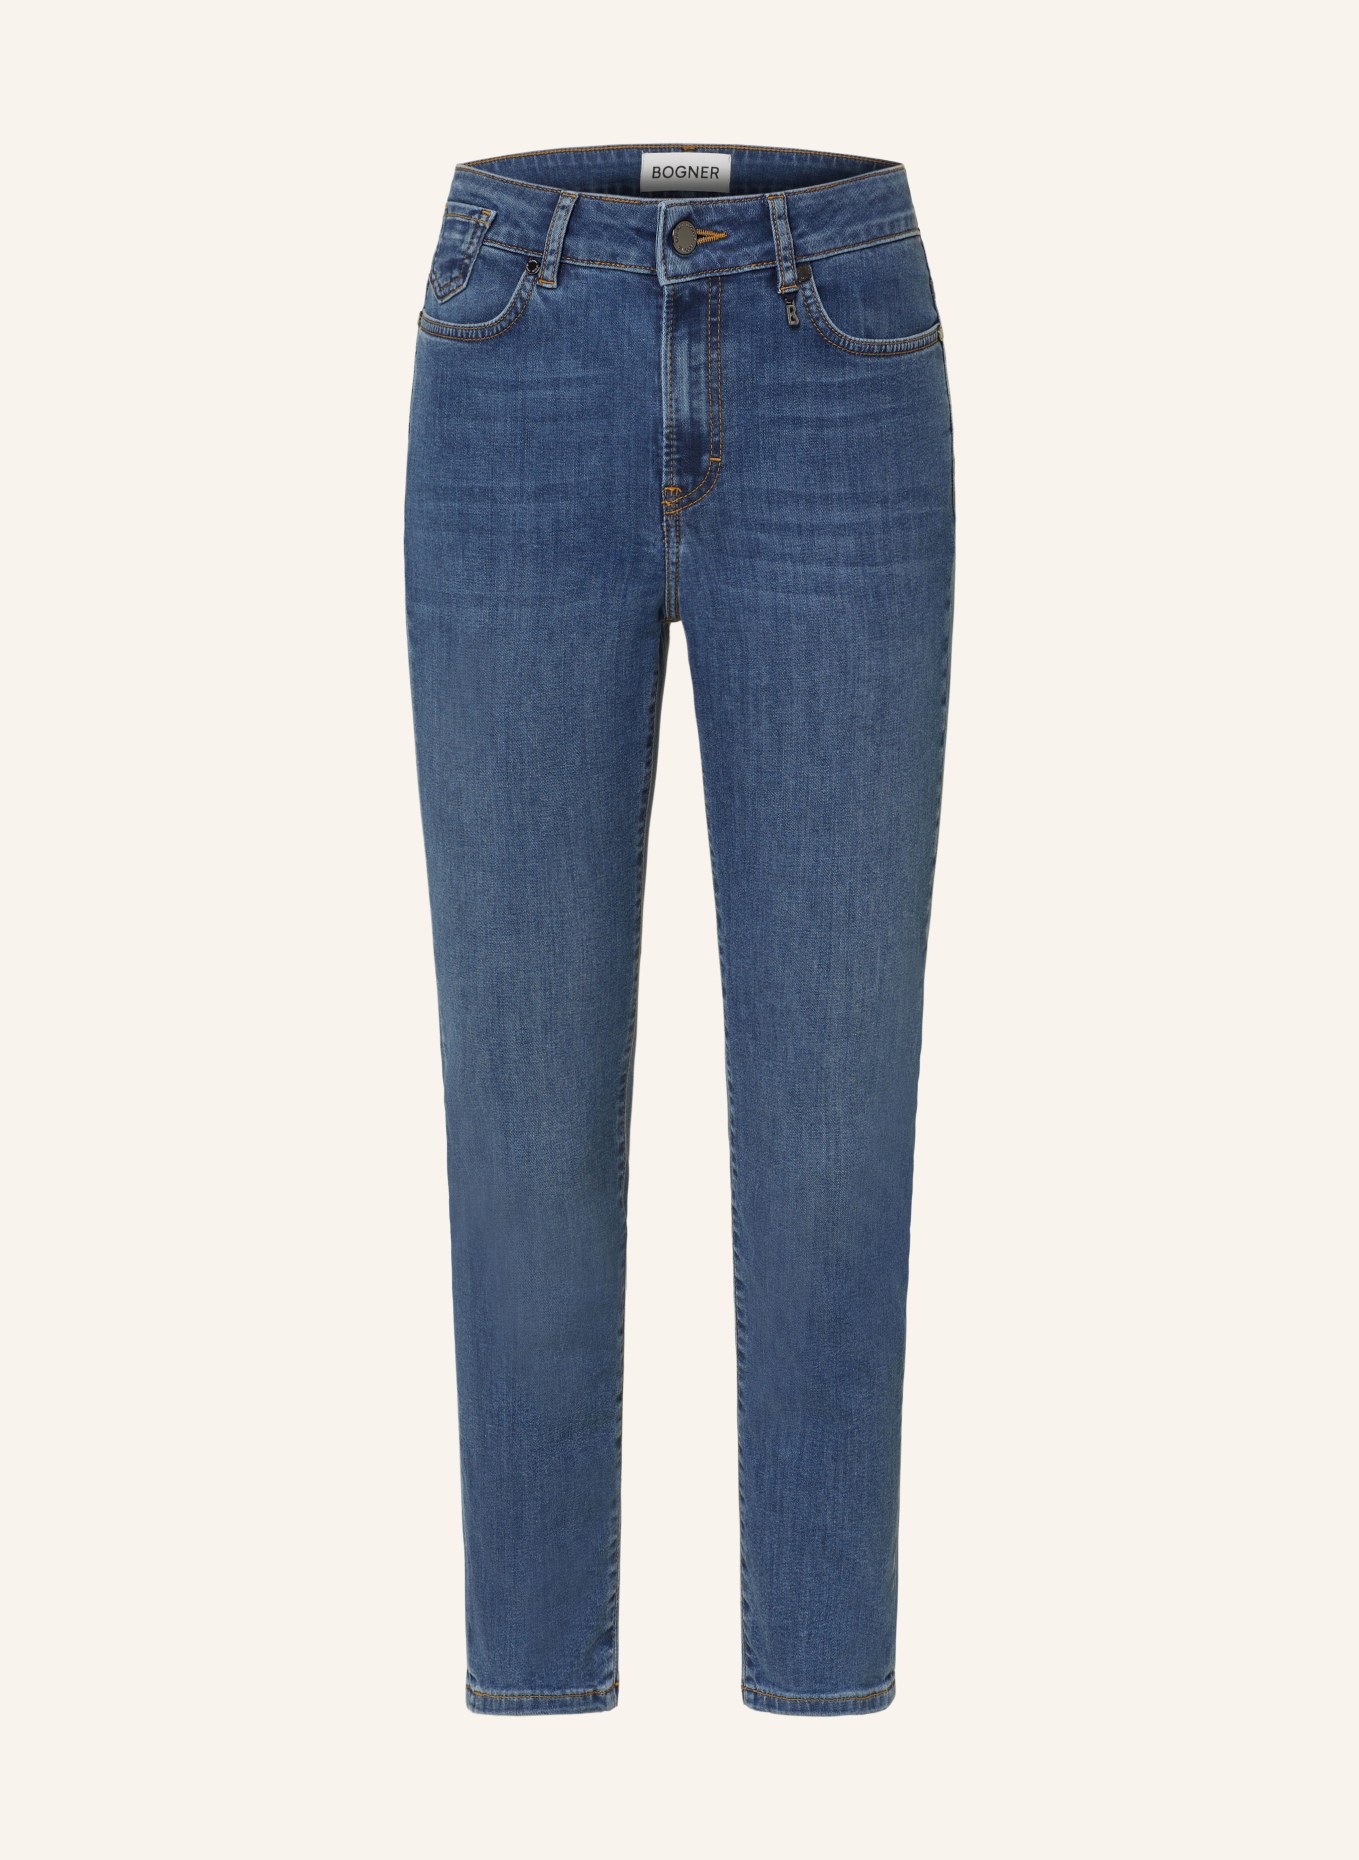 BOGNER 7/8 jeans JULIE-C, Color: 421 denim light mid (Image 1)